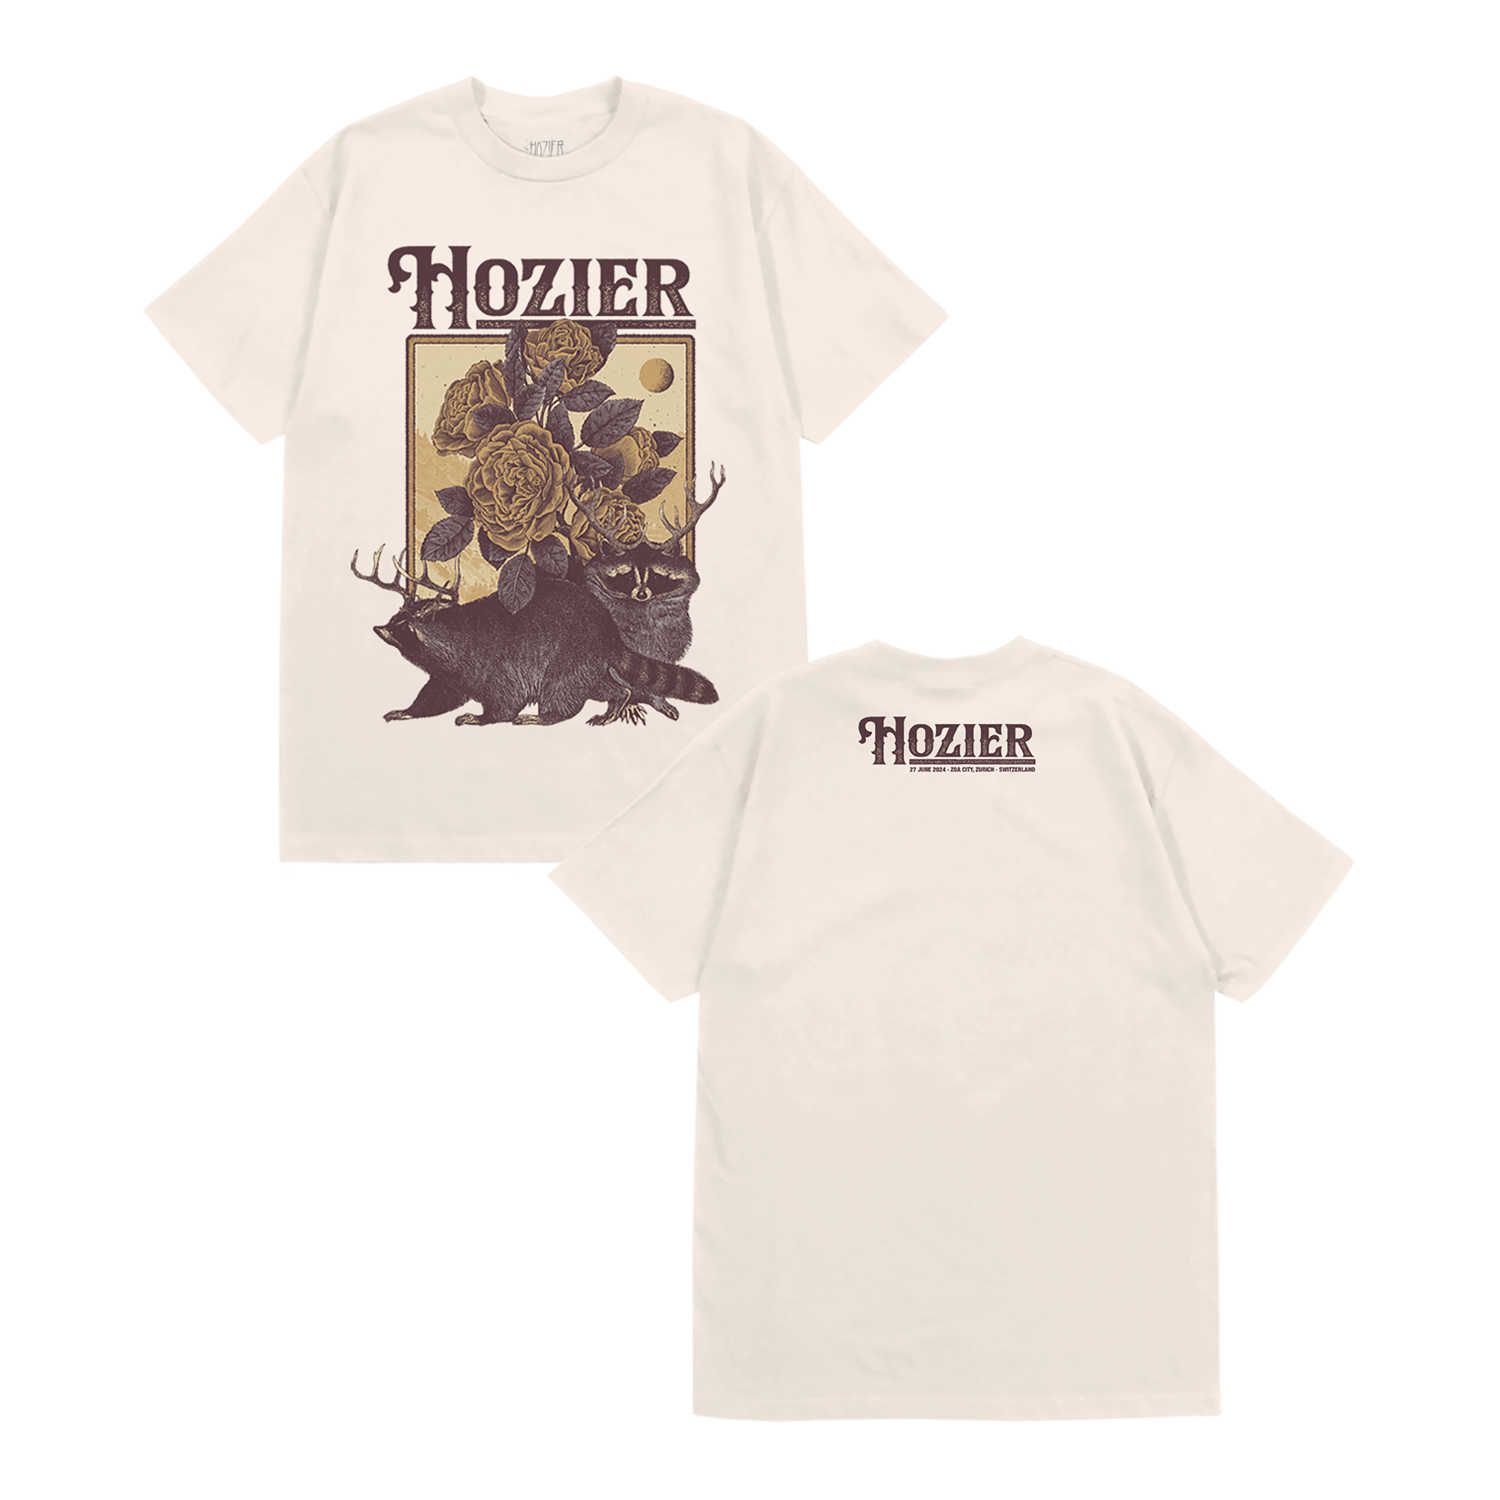 Zurich Event T-Shirt - Hozier